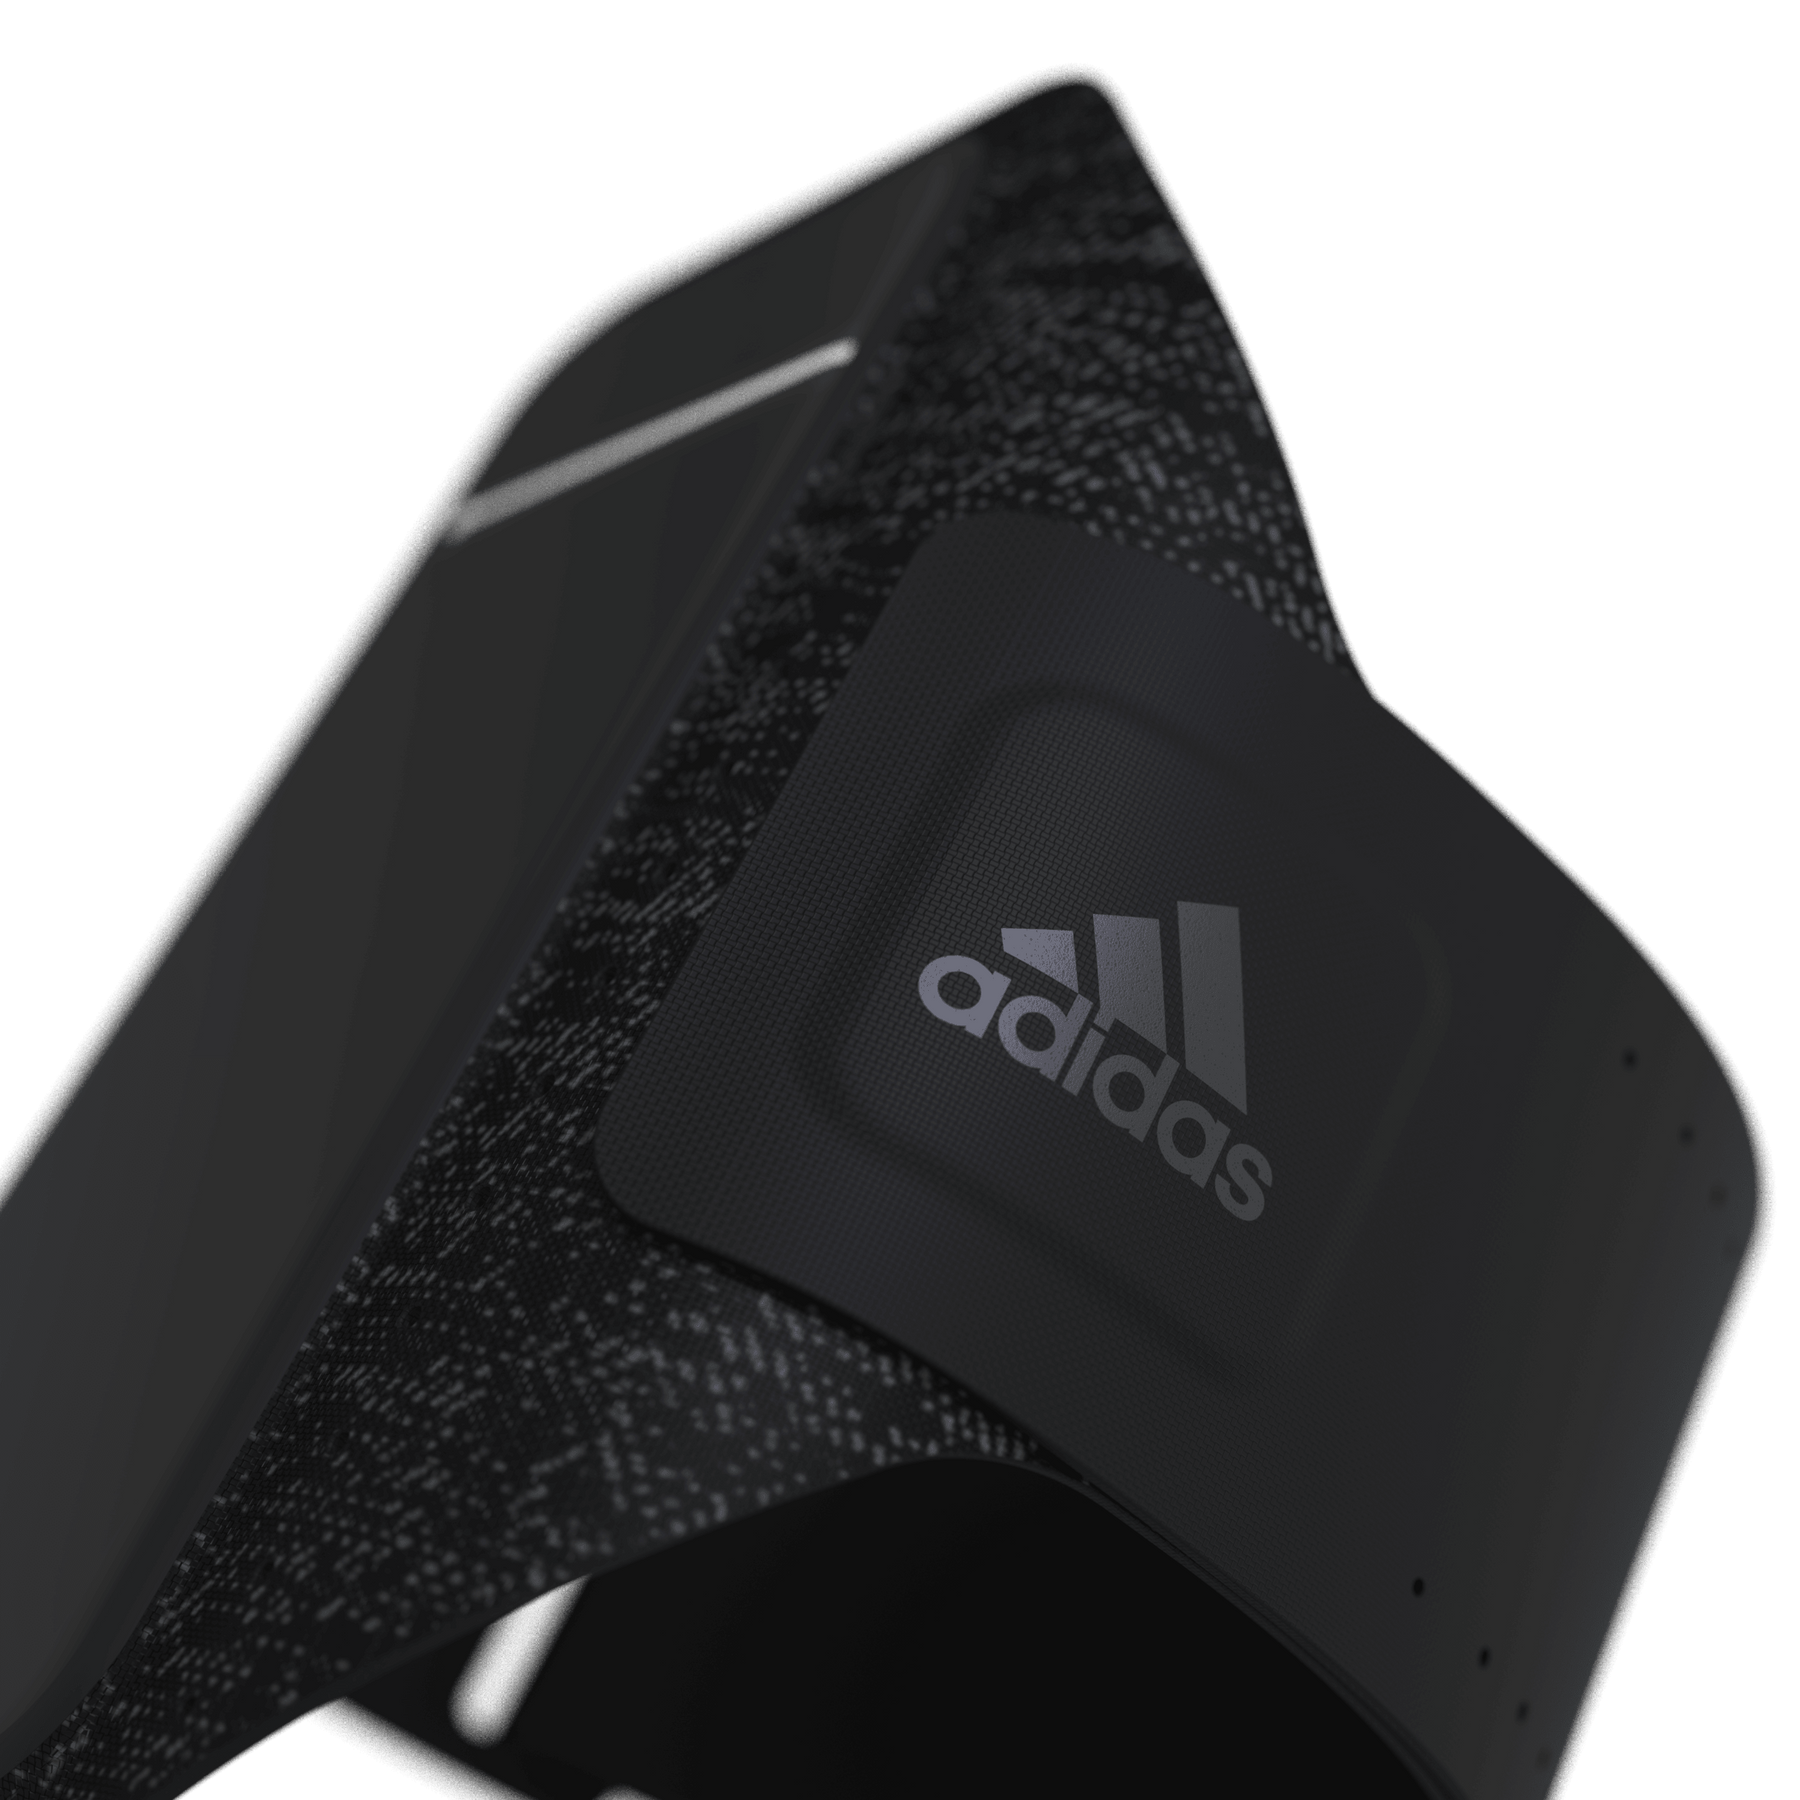 Zware vrachtwagen Uitvoerder Verslaggever adidas Sport Armband Universal Size L, Black